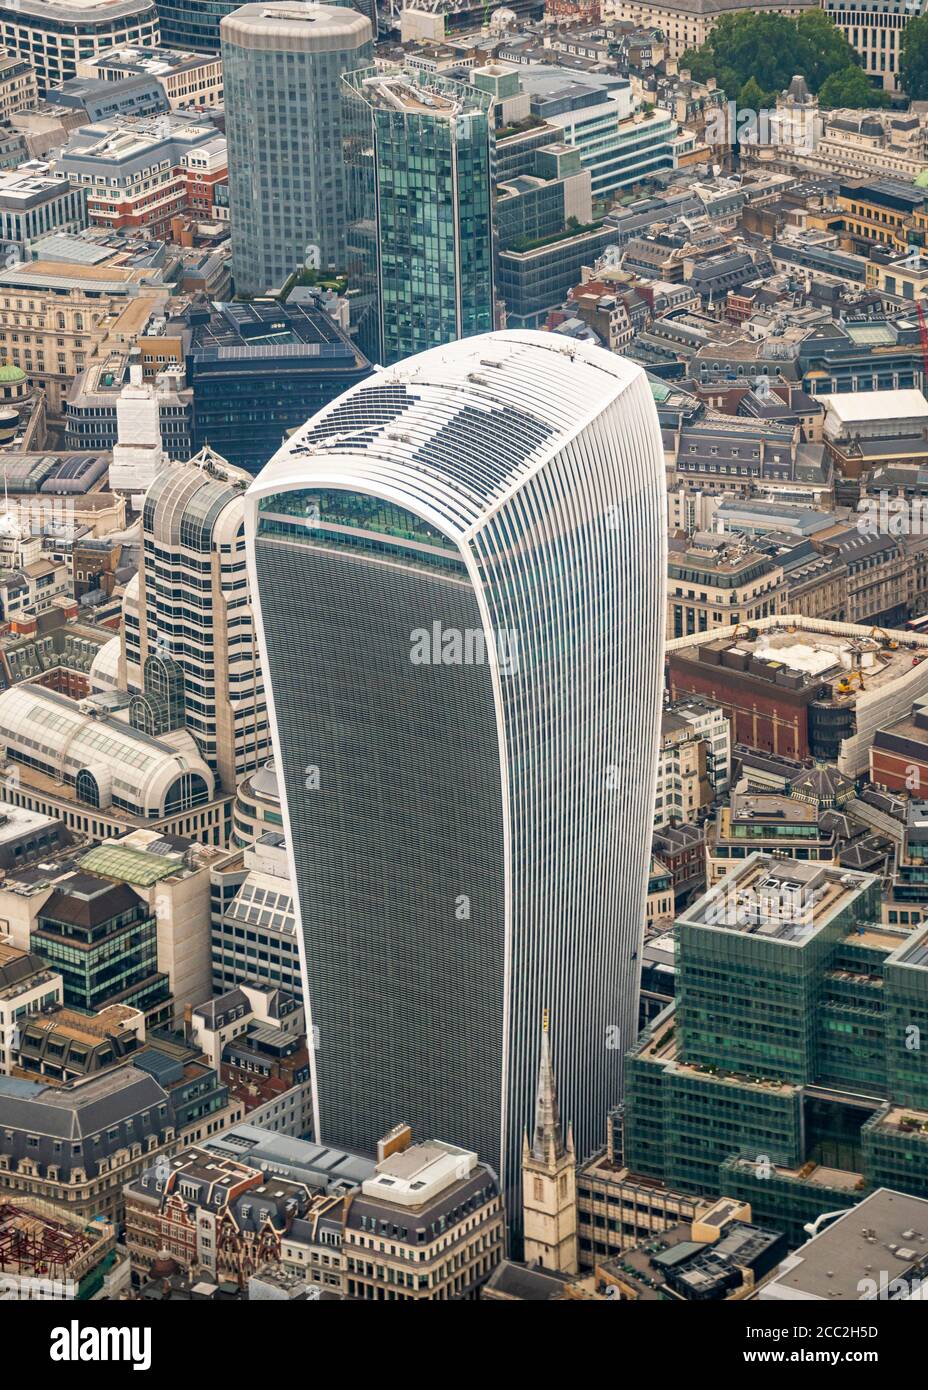 Vista aérea vertical del rascacielos Walkie Talkie, St Mary's Axe en la ciudad de Londres. Foto de stock